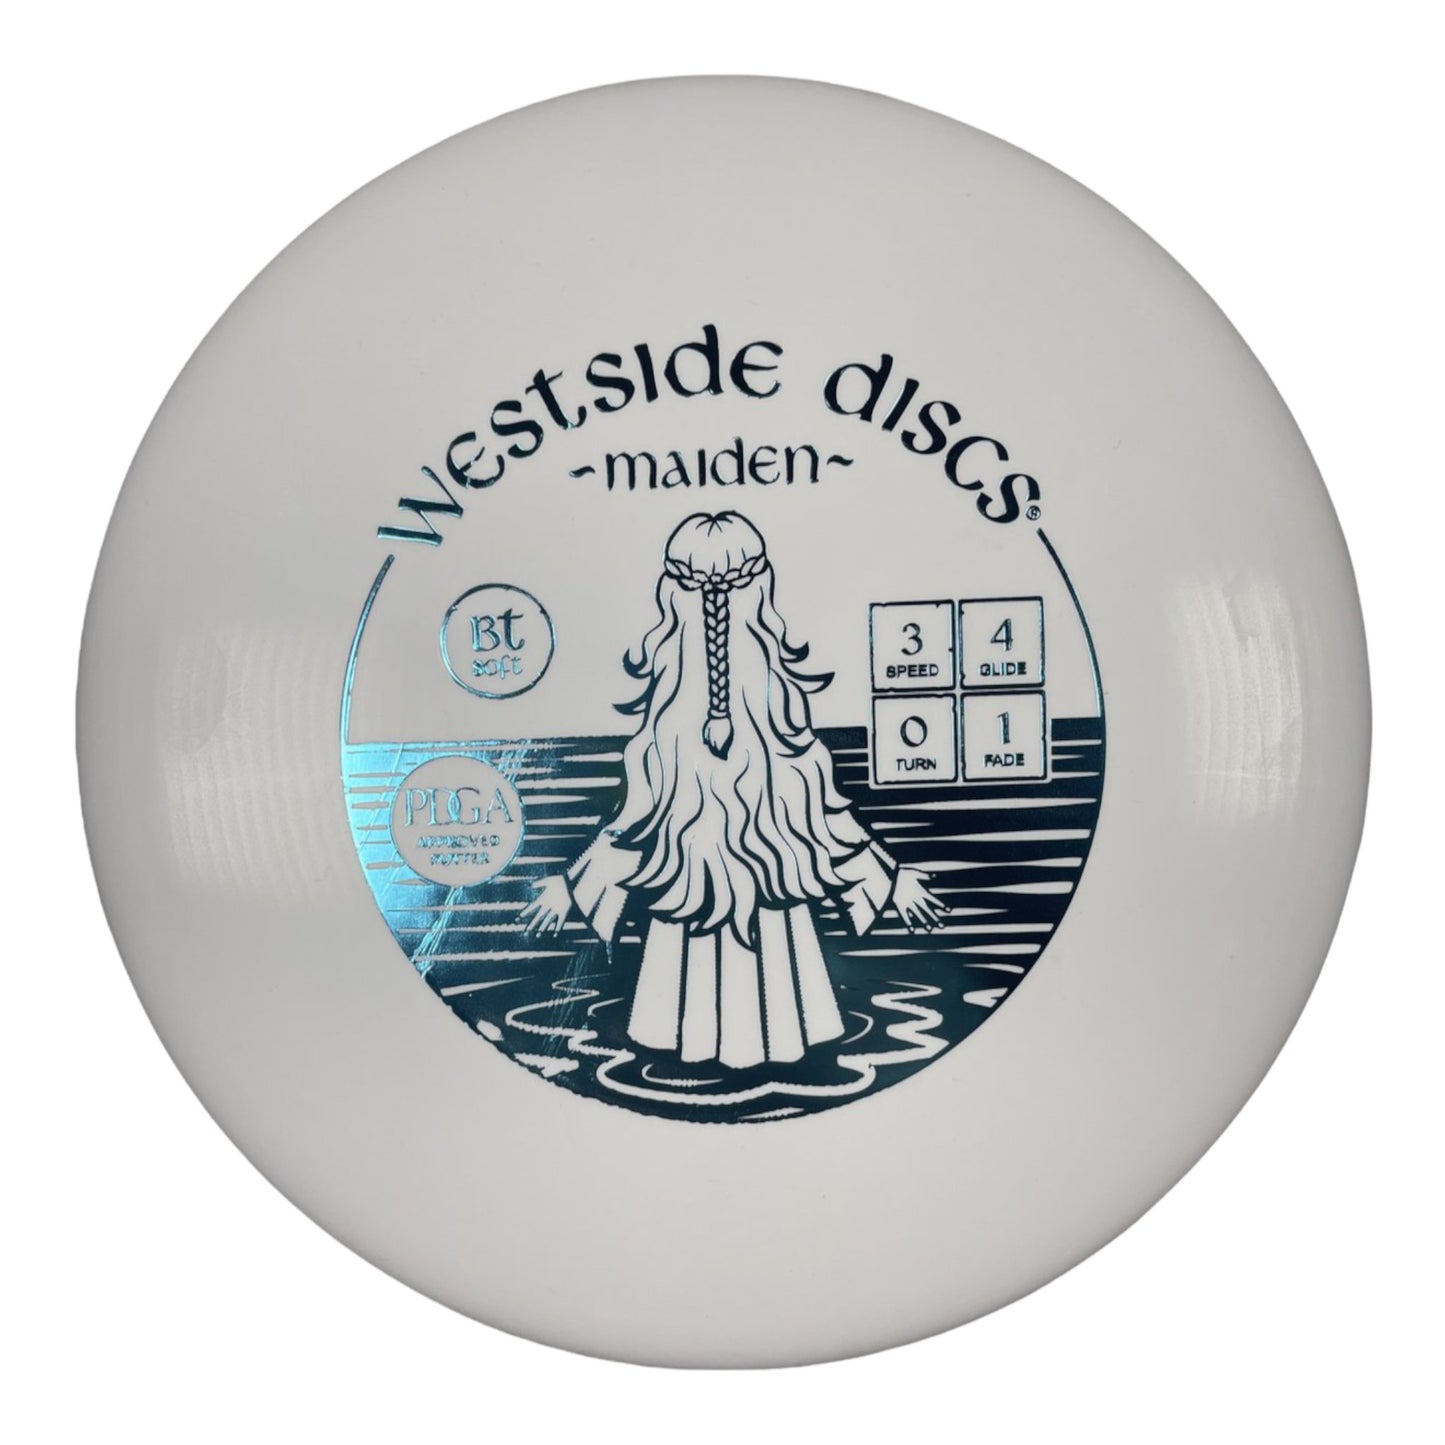 Westside Discs Maiden | BT Soft | White/Blue Disc Golf